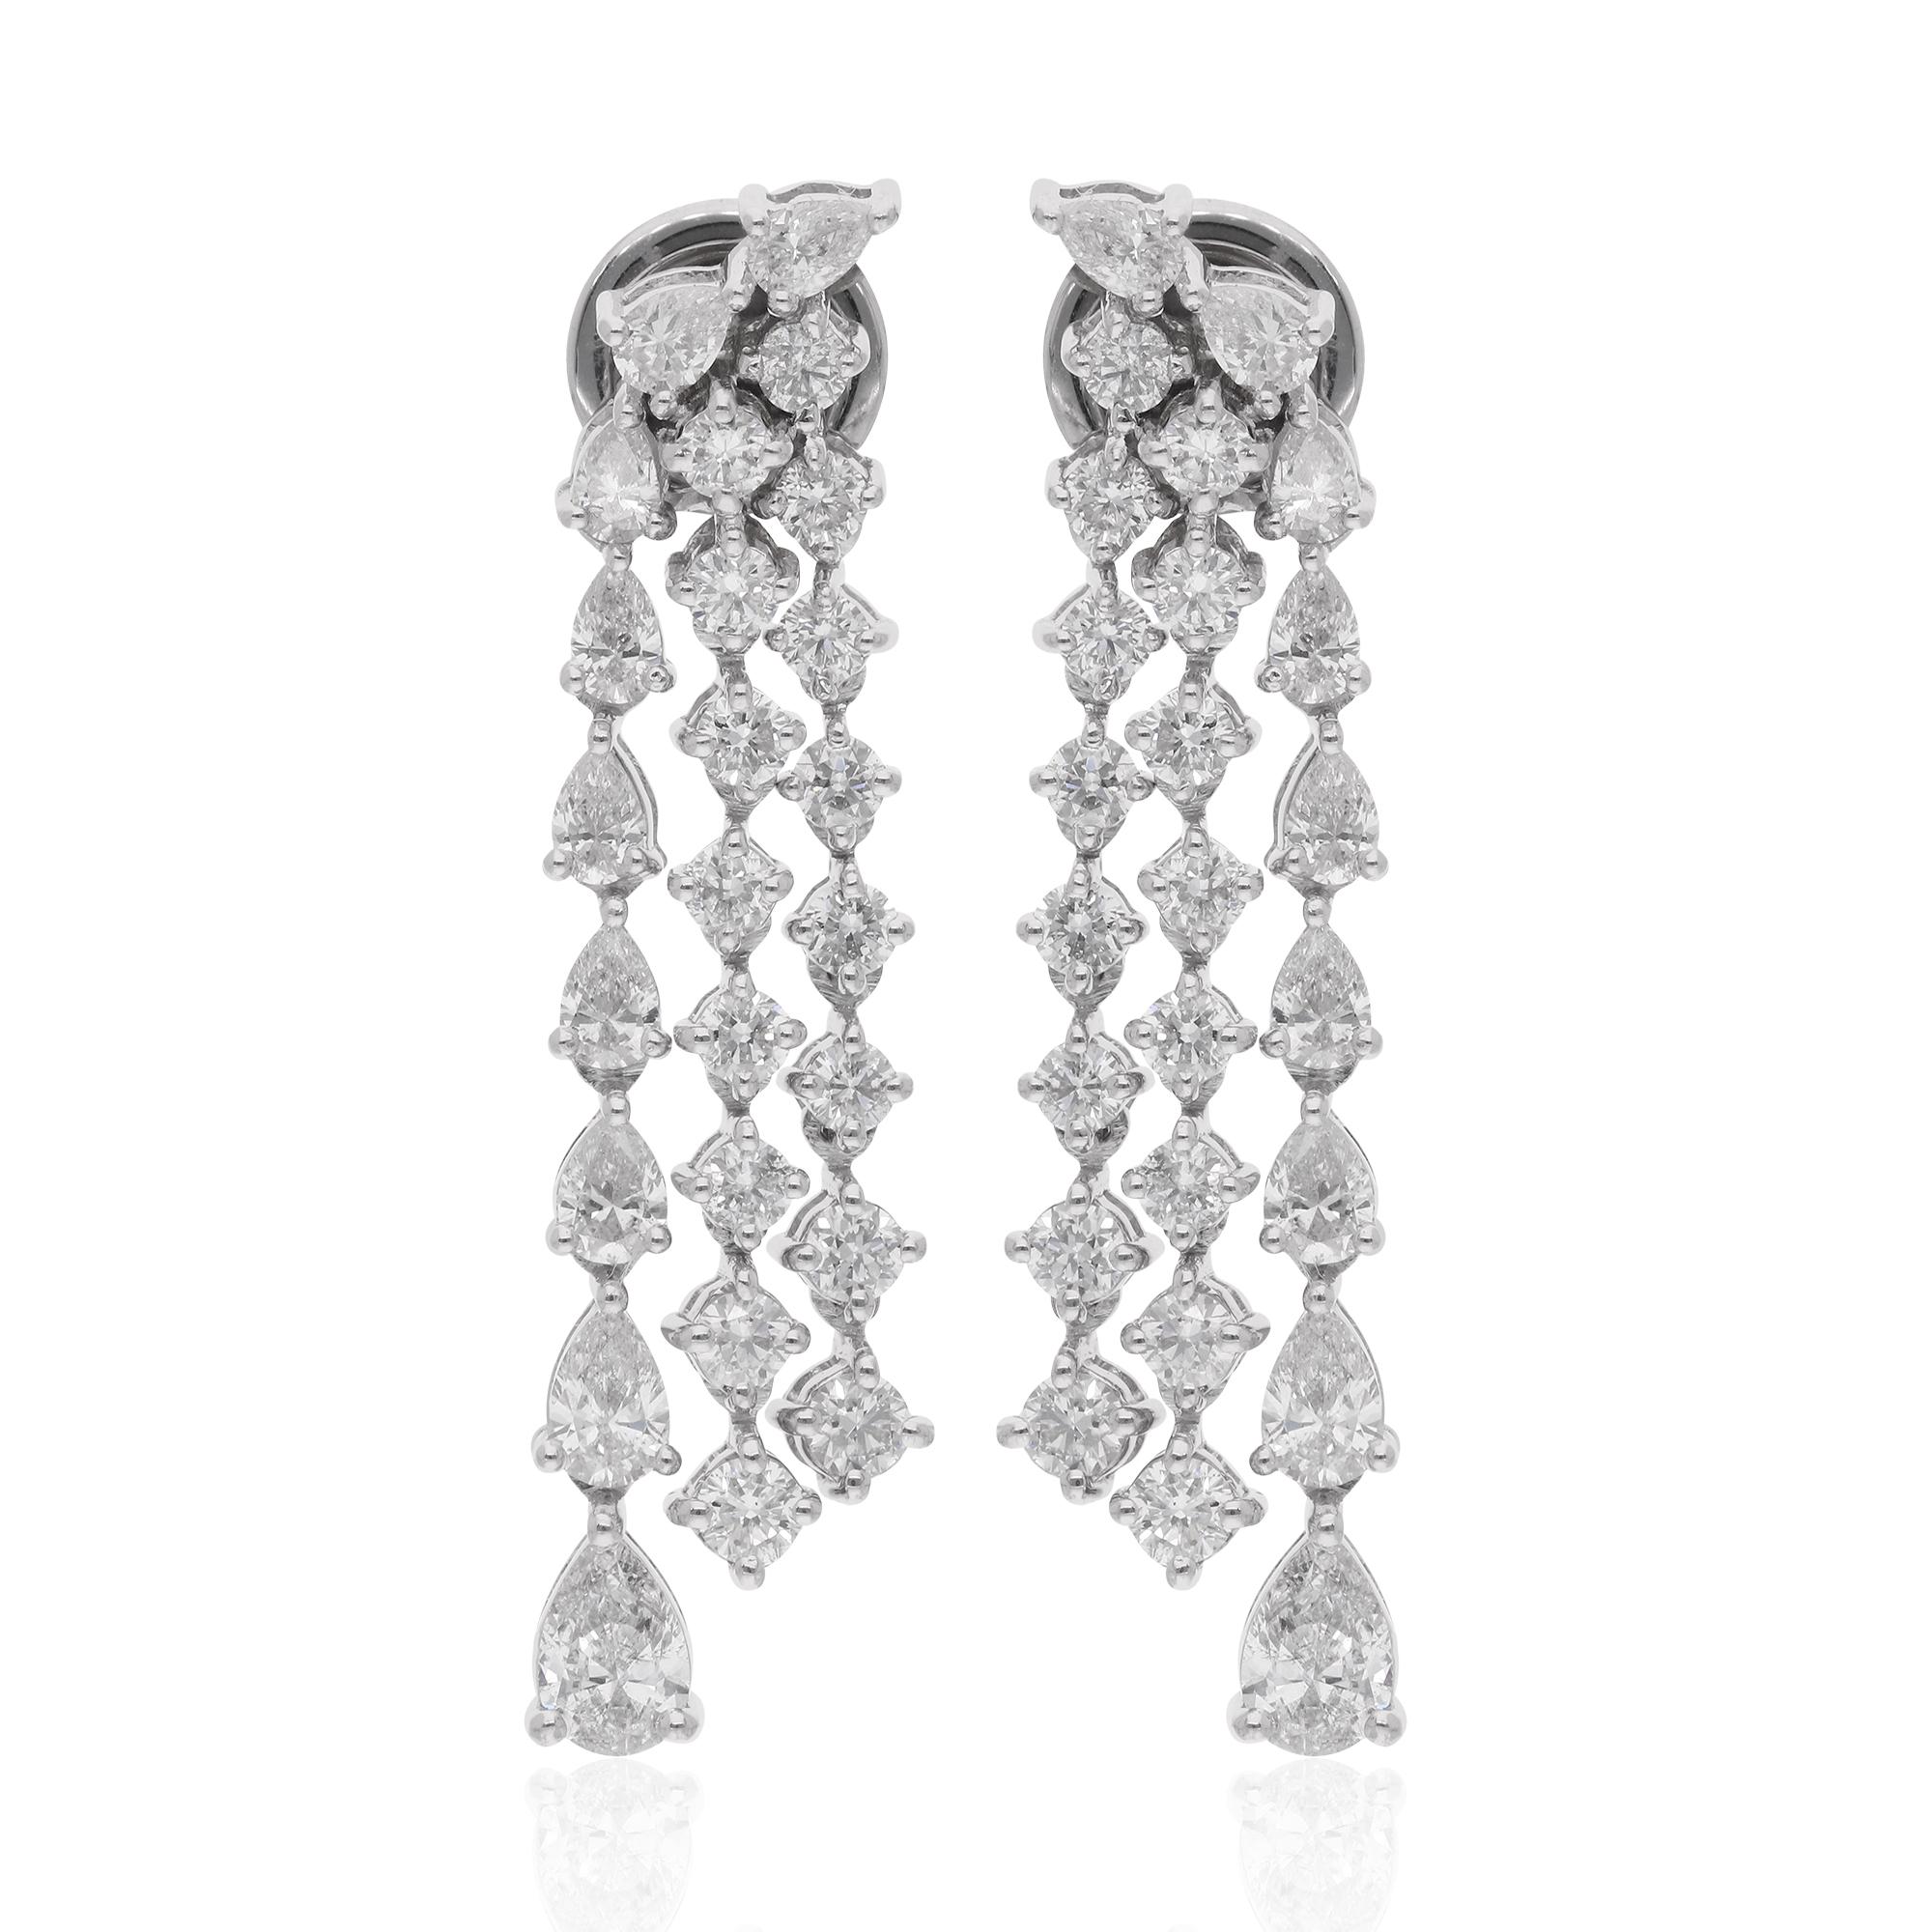 Ces exquises boucles d'oreilles chandelier sont réalisées en or blanc 18 carats et présentent une combinaison captivante de diamants en forme de poire et de diamants ronds d'un poids total de 2,76 carats. Les diamants en forme de poire, connus pour